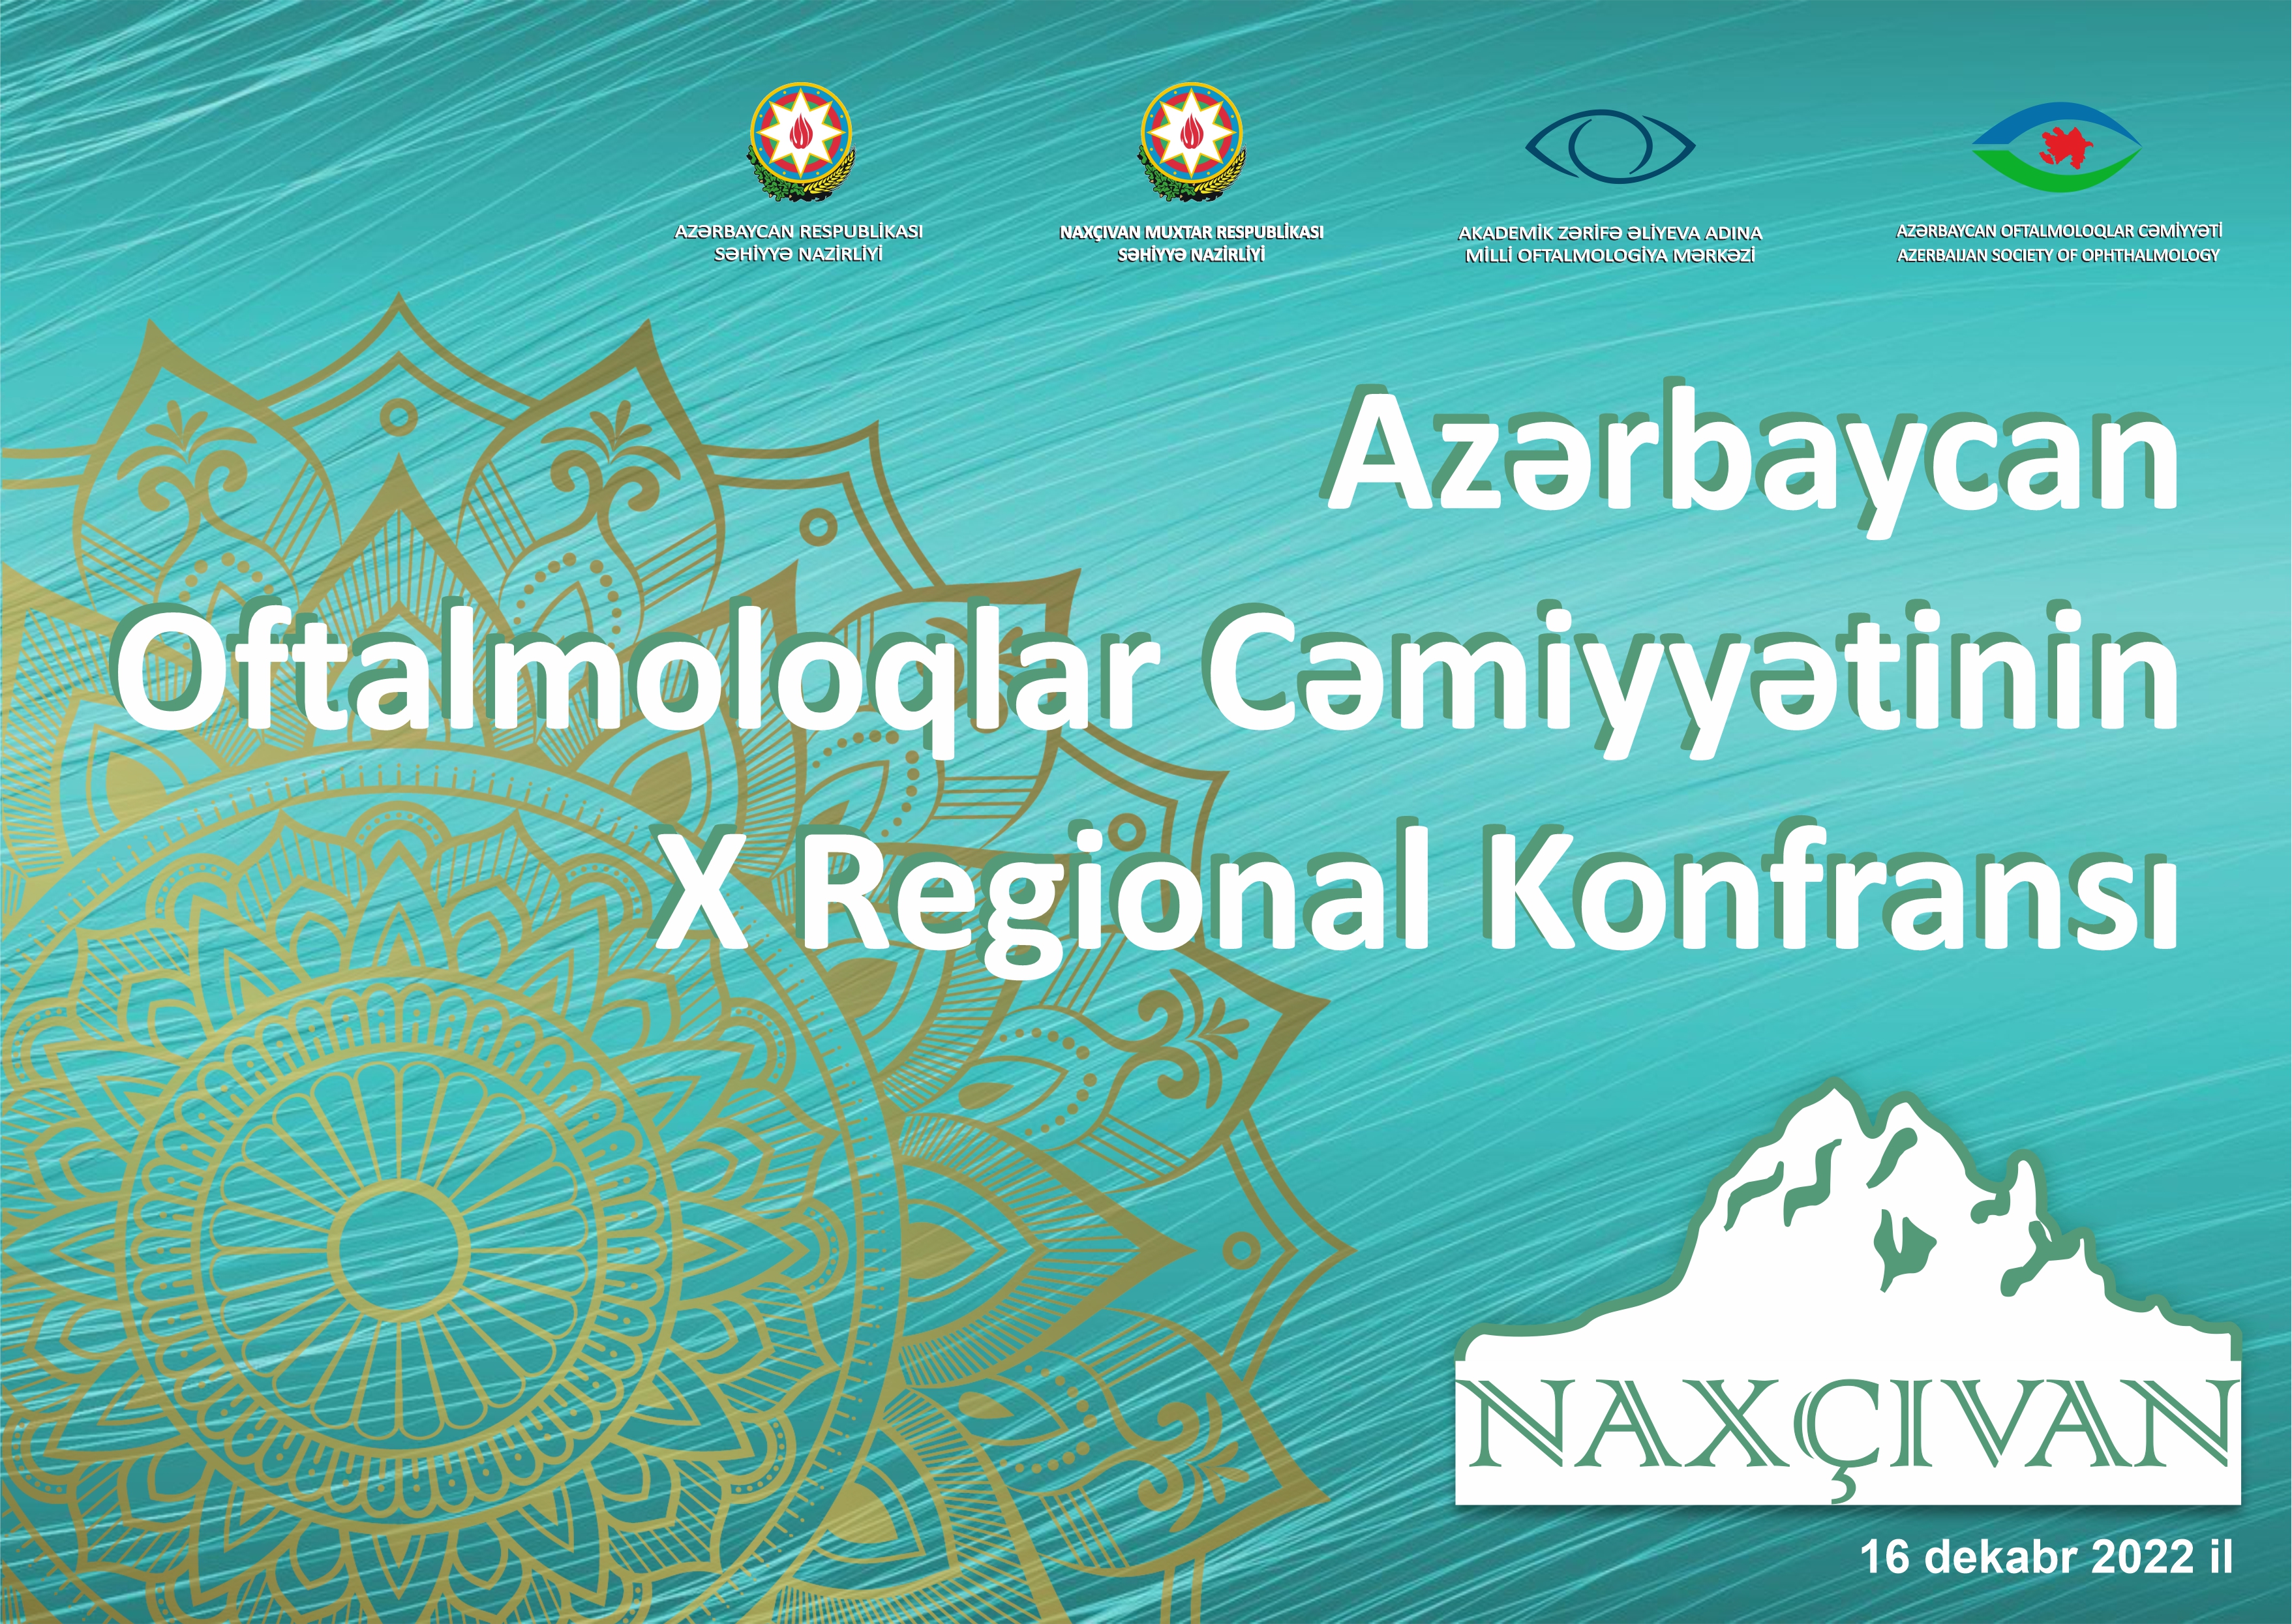 16 dekabr 2022-ci il tarixində Naxçıvan şəhərində Azərbaycan Oftalmoloqlar Cəmiyyətinin 10-cu Regional konfransı keçiriləcək!